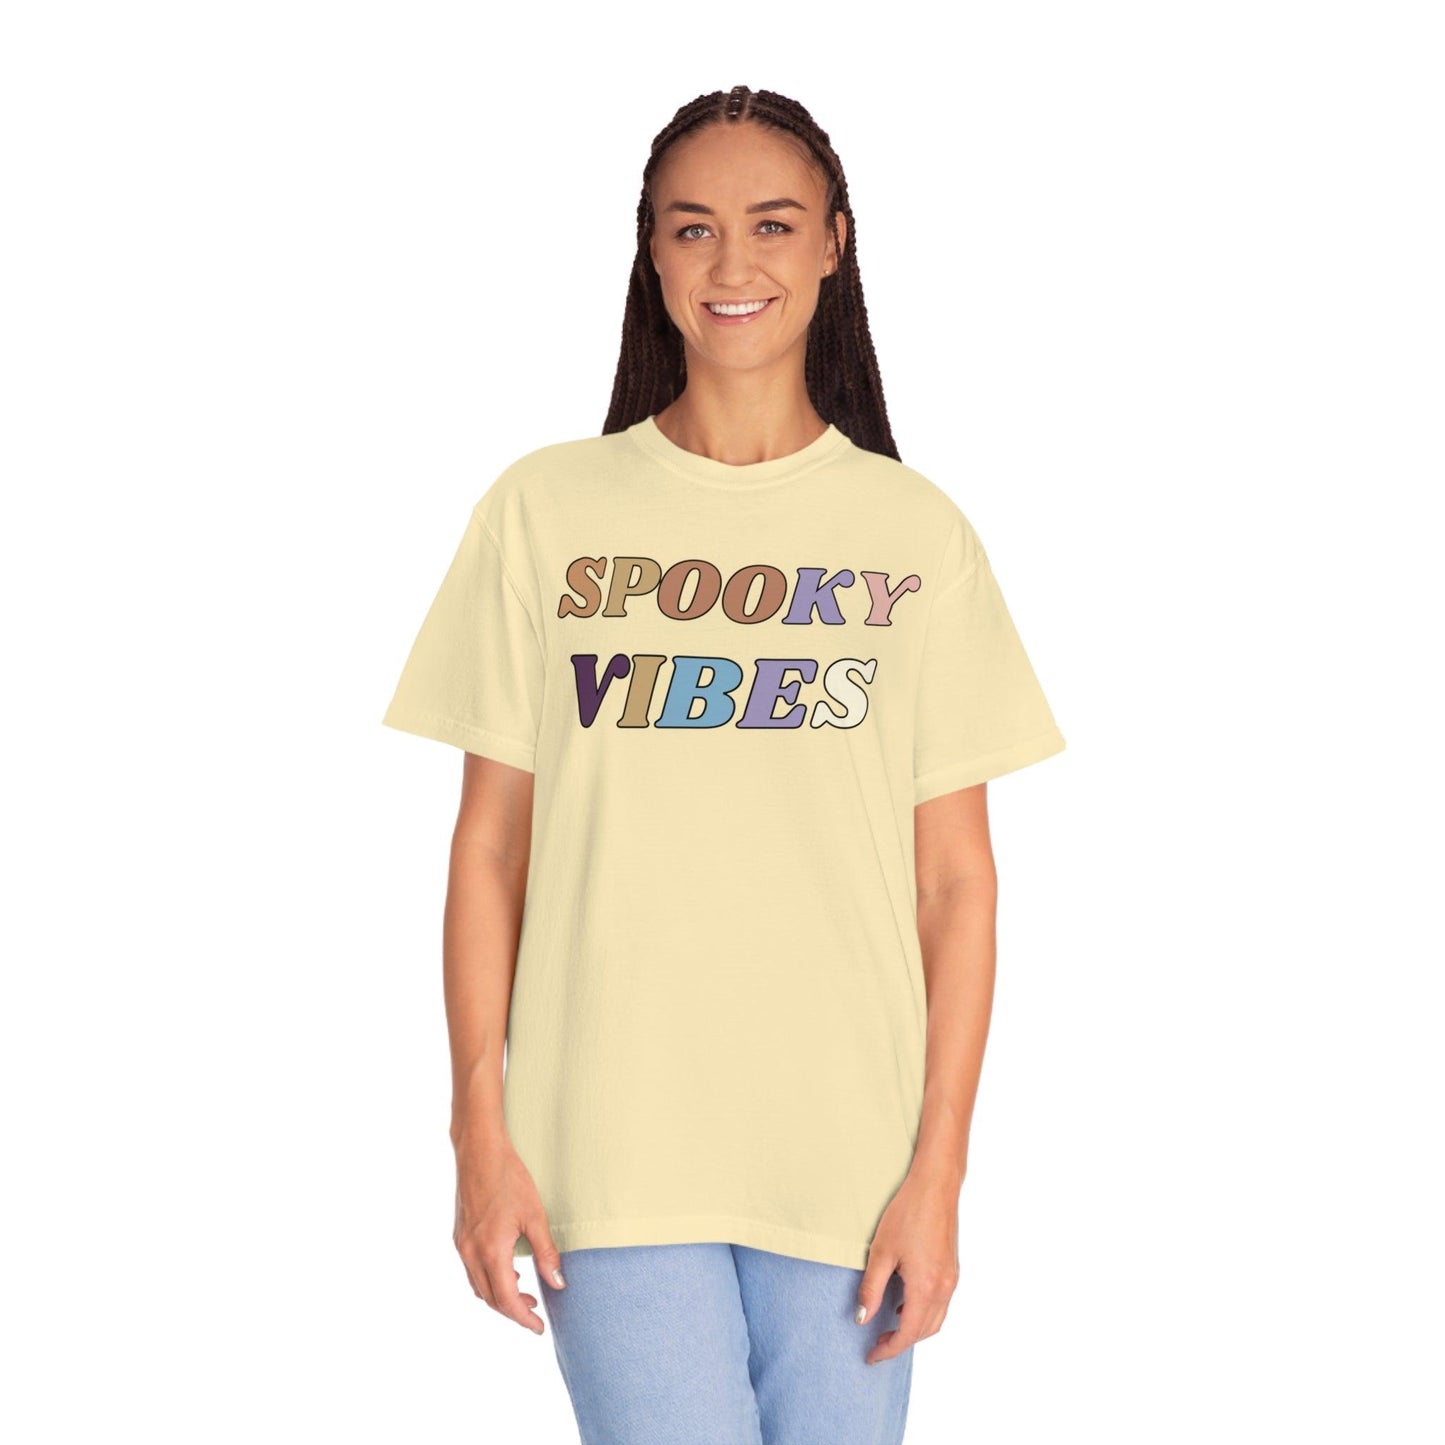 Retro Halloween Tshirt, Spooky Vibes Shirt, Vintage Shirt Halloween Shirt - Cute Fall Shirt